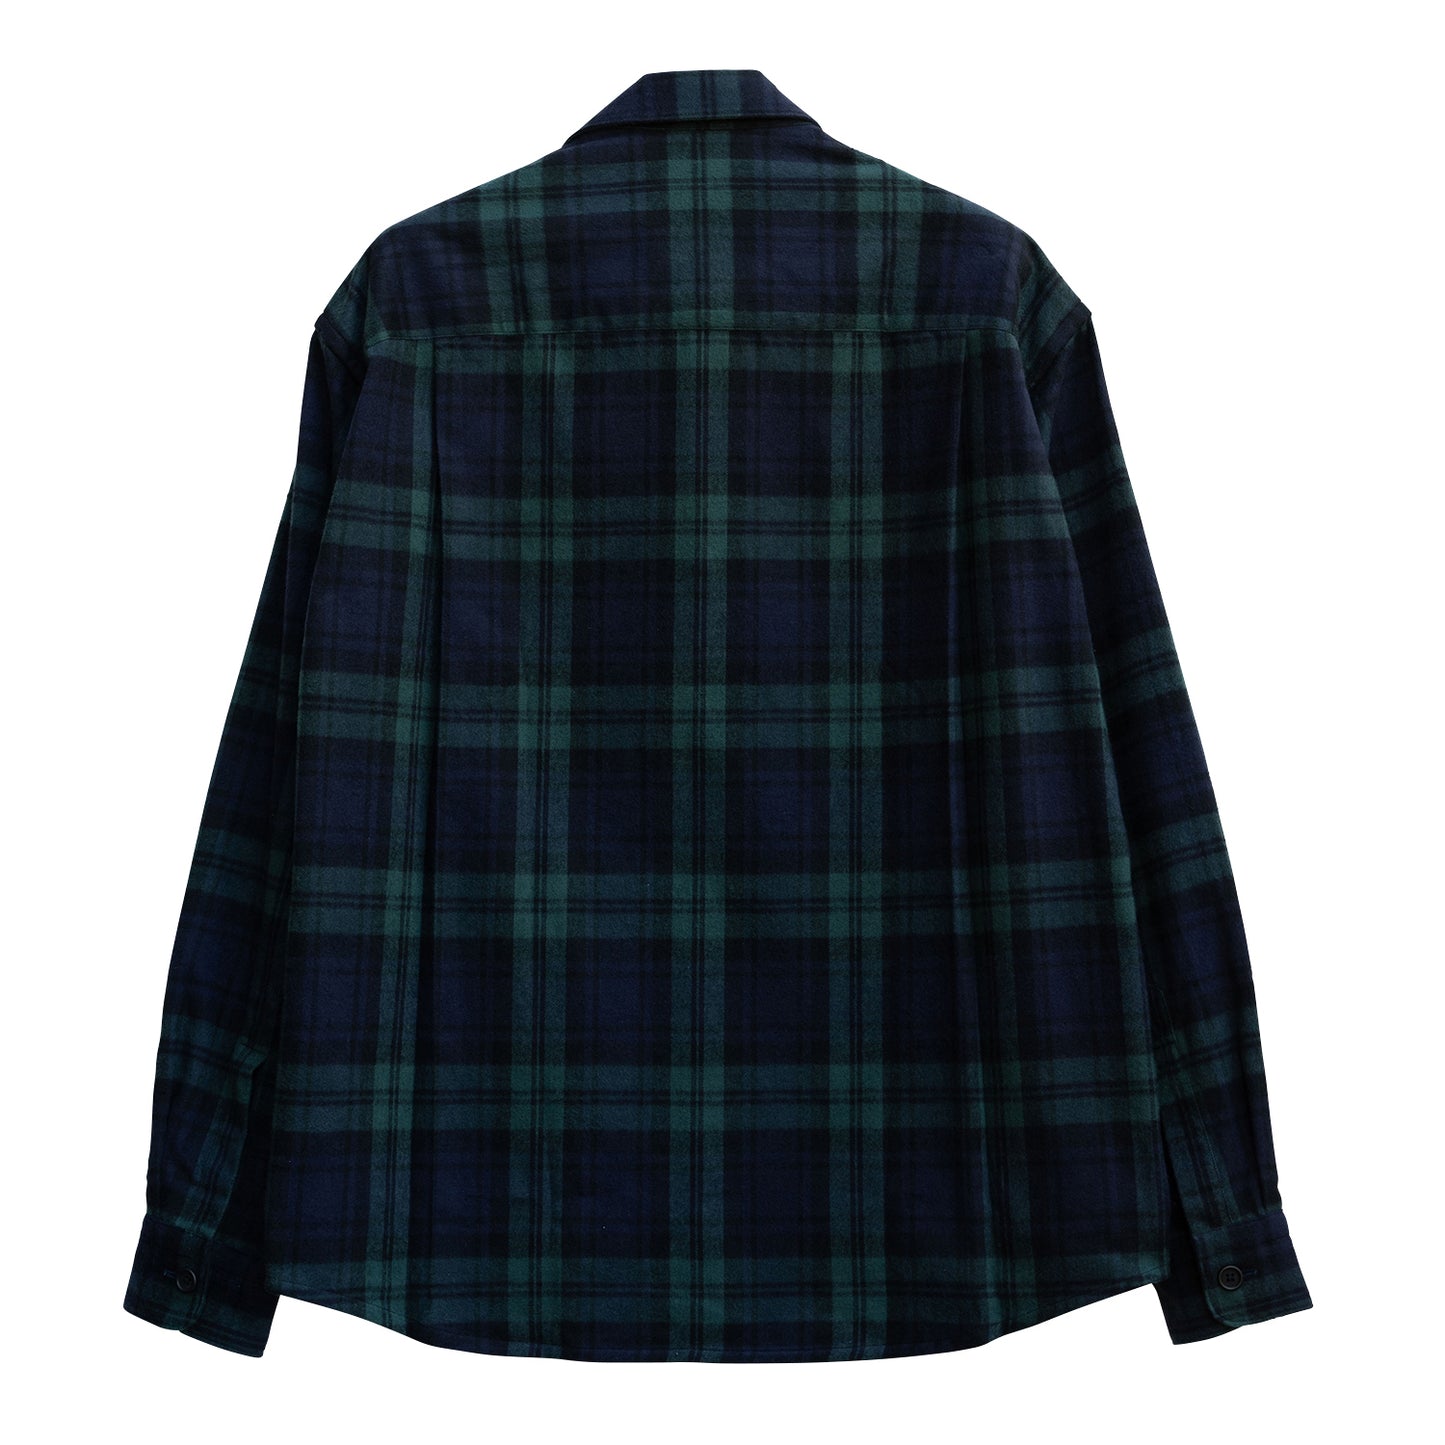 COLONY CLOTHING / ブラックウォッチ ダブルポケットシャツ / CC2302-SH05